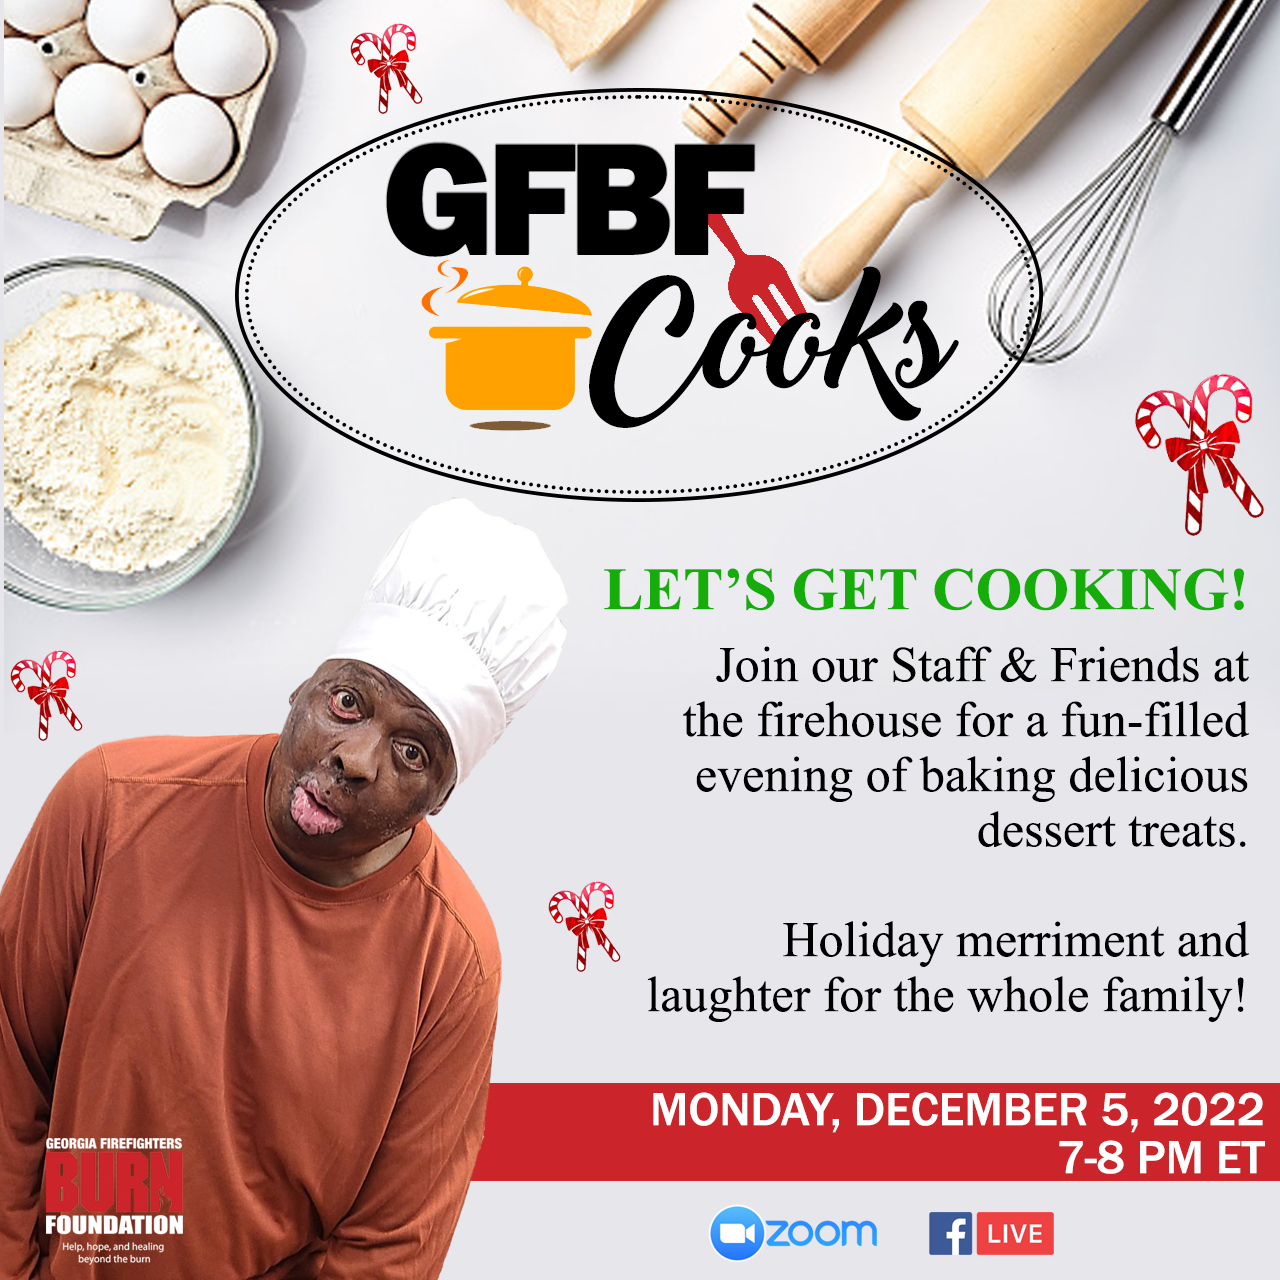 GFBF Cooks